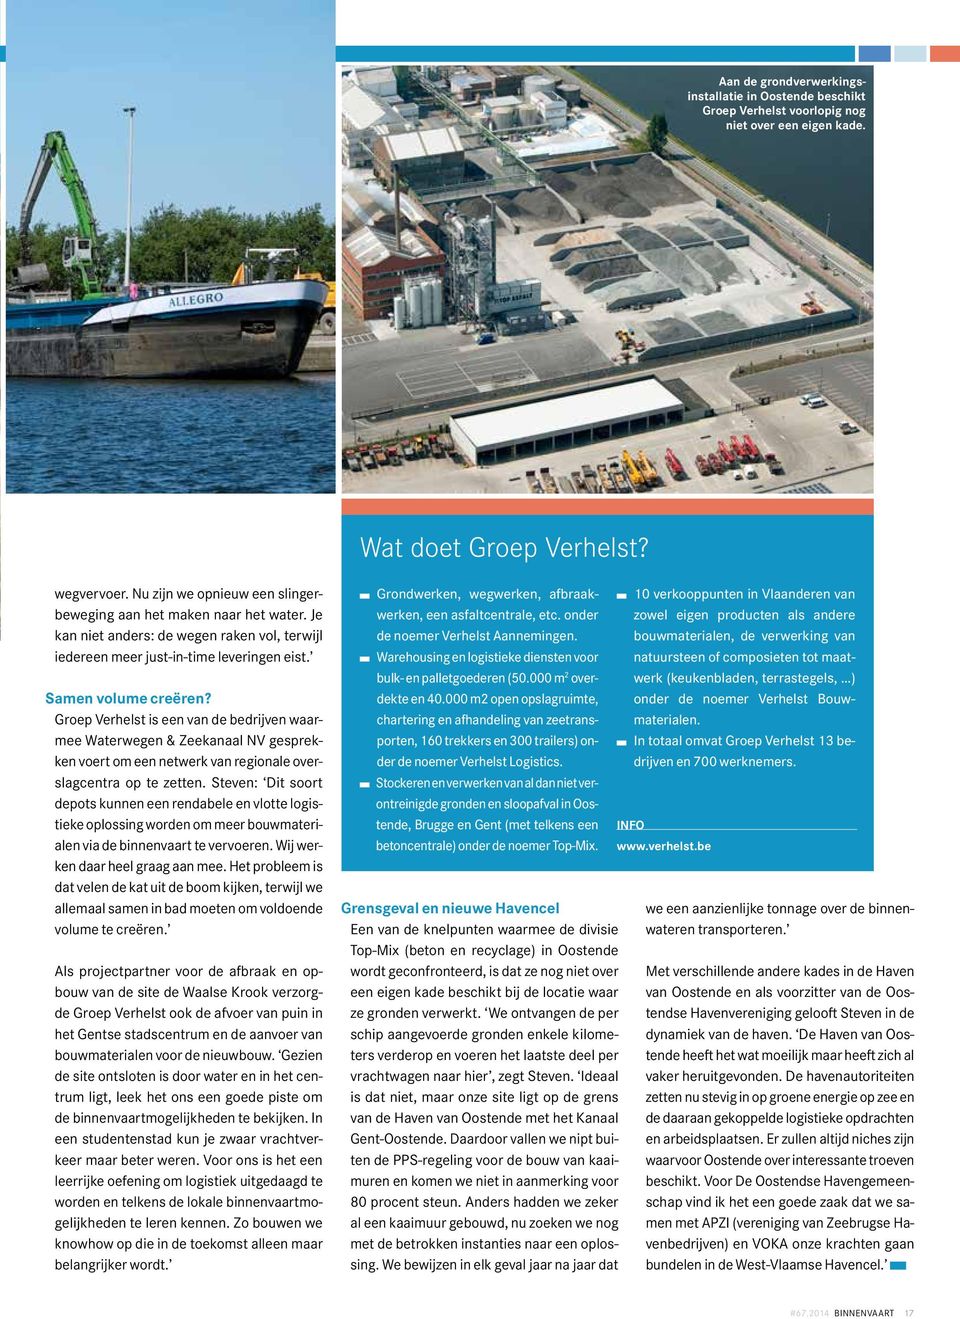 Groep Verhelst is een van de bedrijven waarmee Waterwegen & Zeekanaal NV gesprekken voert om een netwerk van regionale overslagcentra op te zetten.